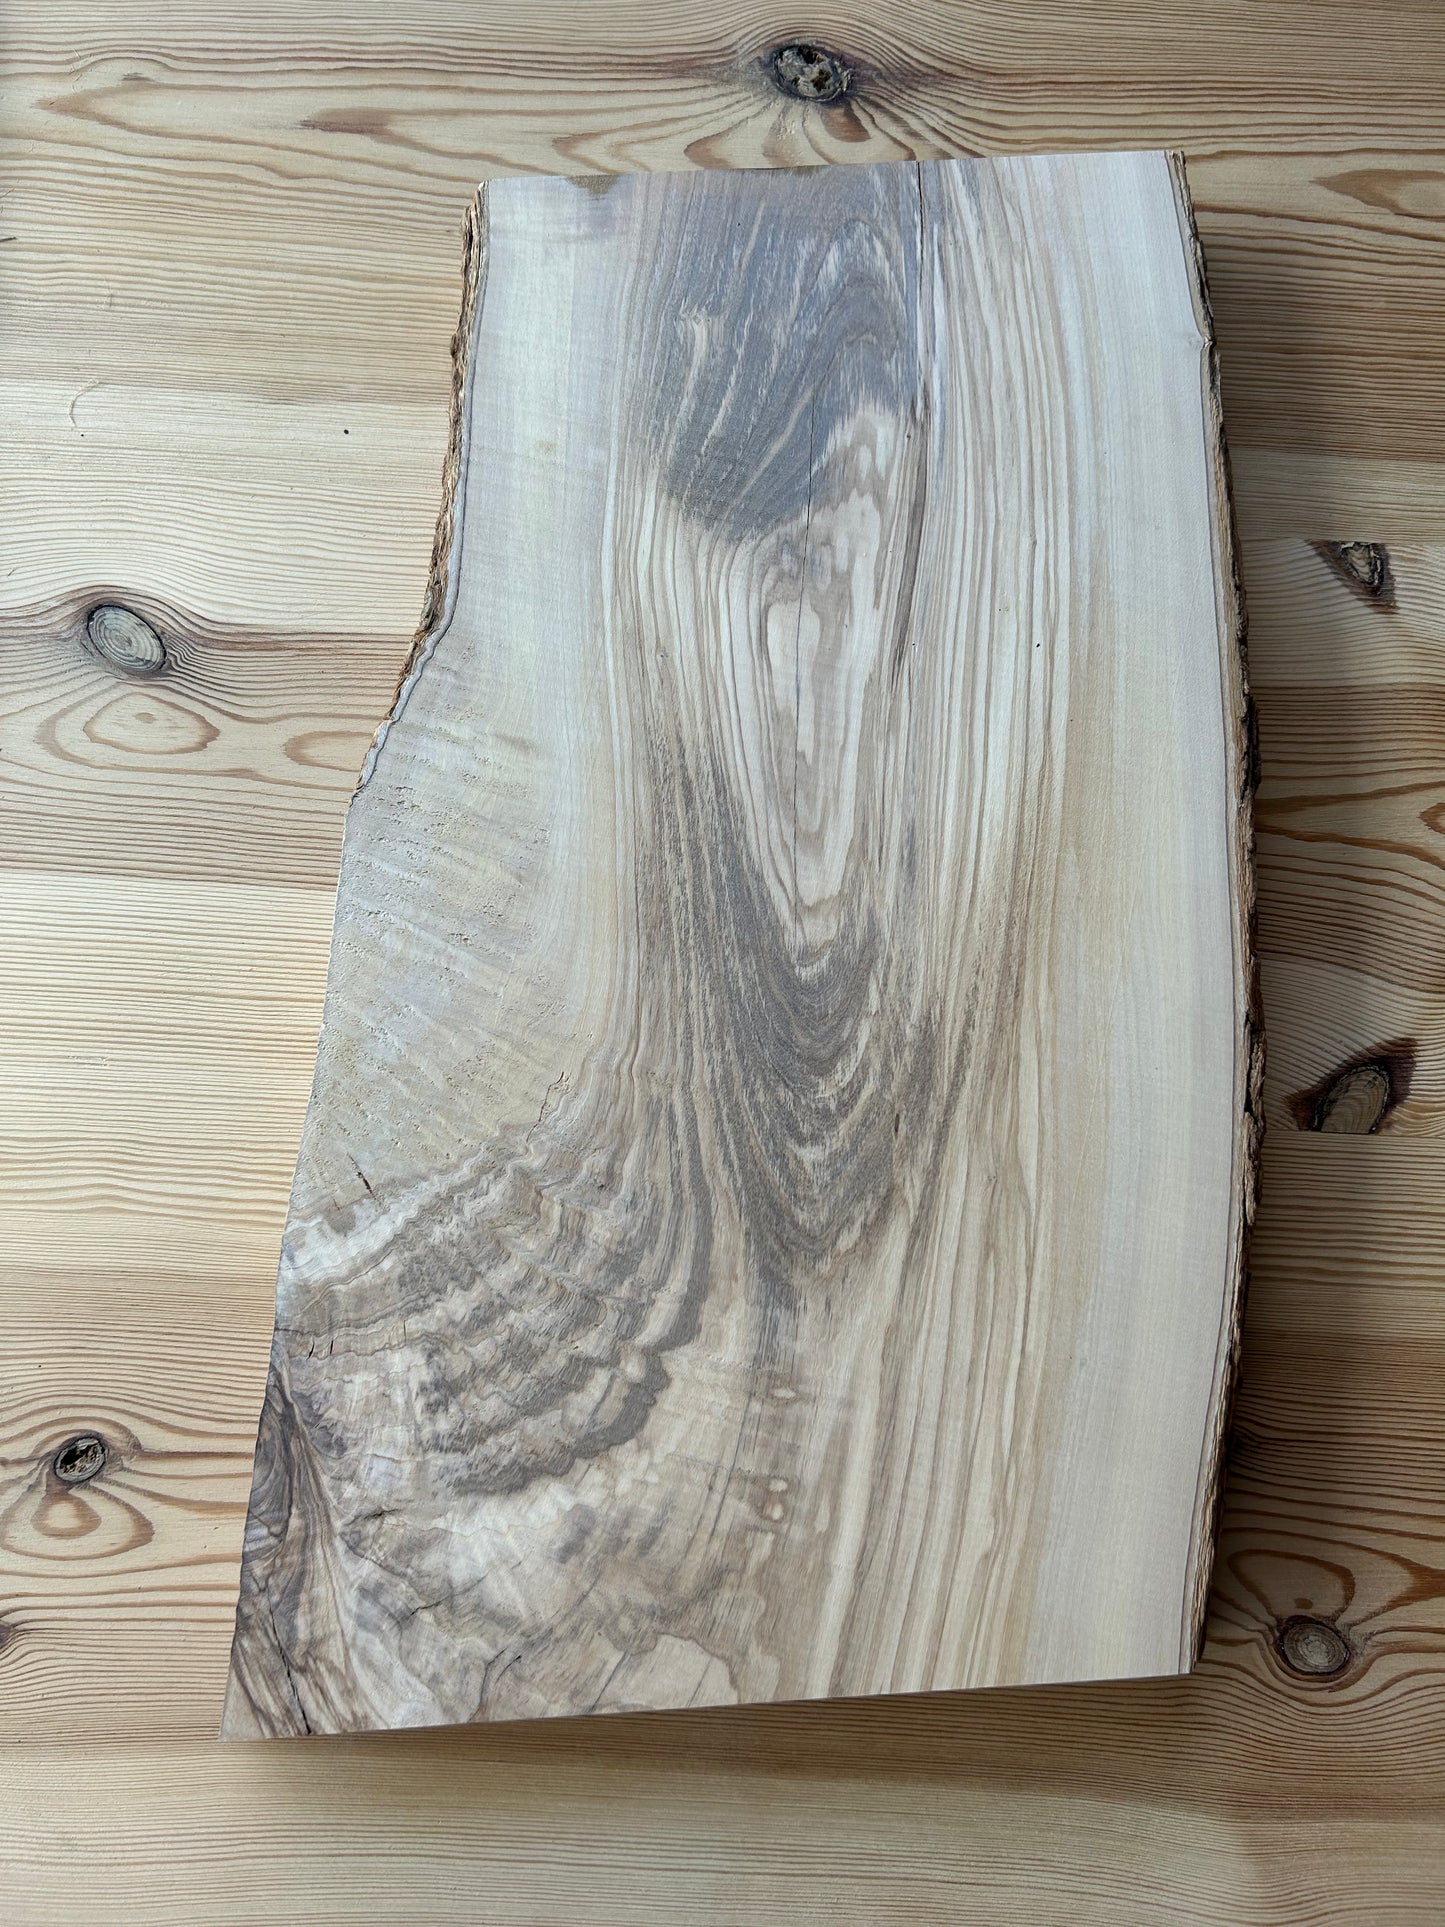 Tagliere Small in legno d'ulivo con corteccia Made in Blasi - Spessore 4,5/5,0 mm